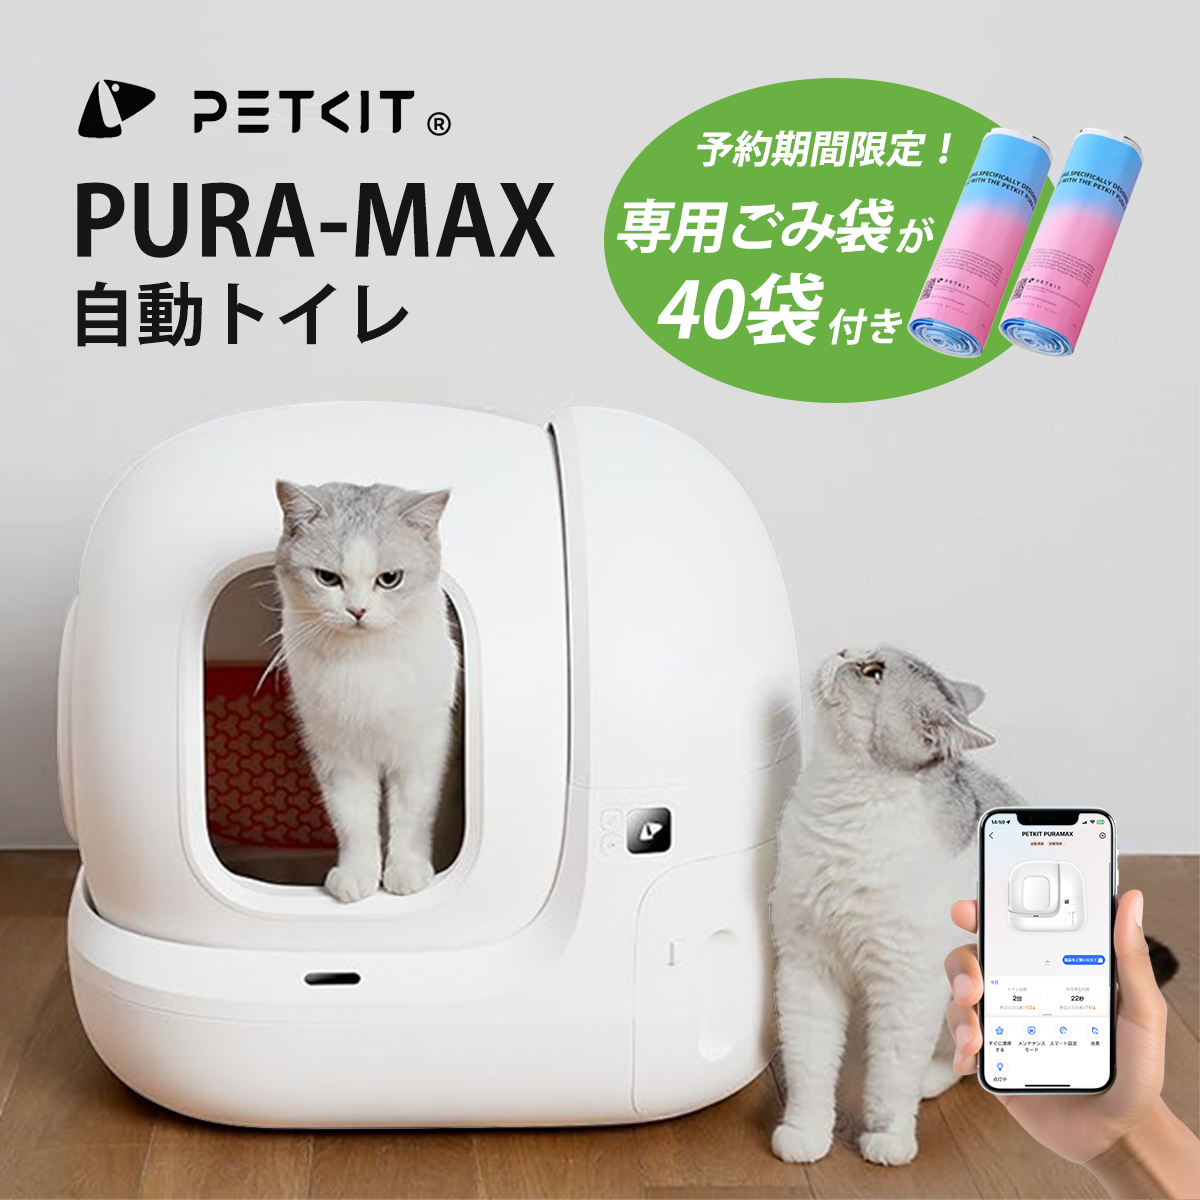 ７月下旬入荷予定【PETKIT-PURA-MAX (高級版) 】自動猫用トイレ ペットキット 自動ネコトイレ【正規品】【安心1年保証】 ペットキット